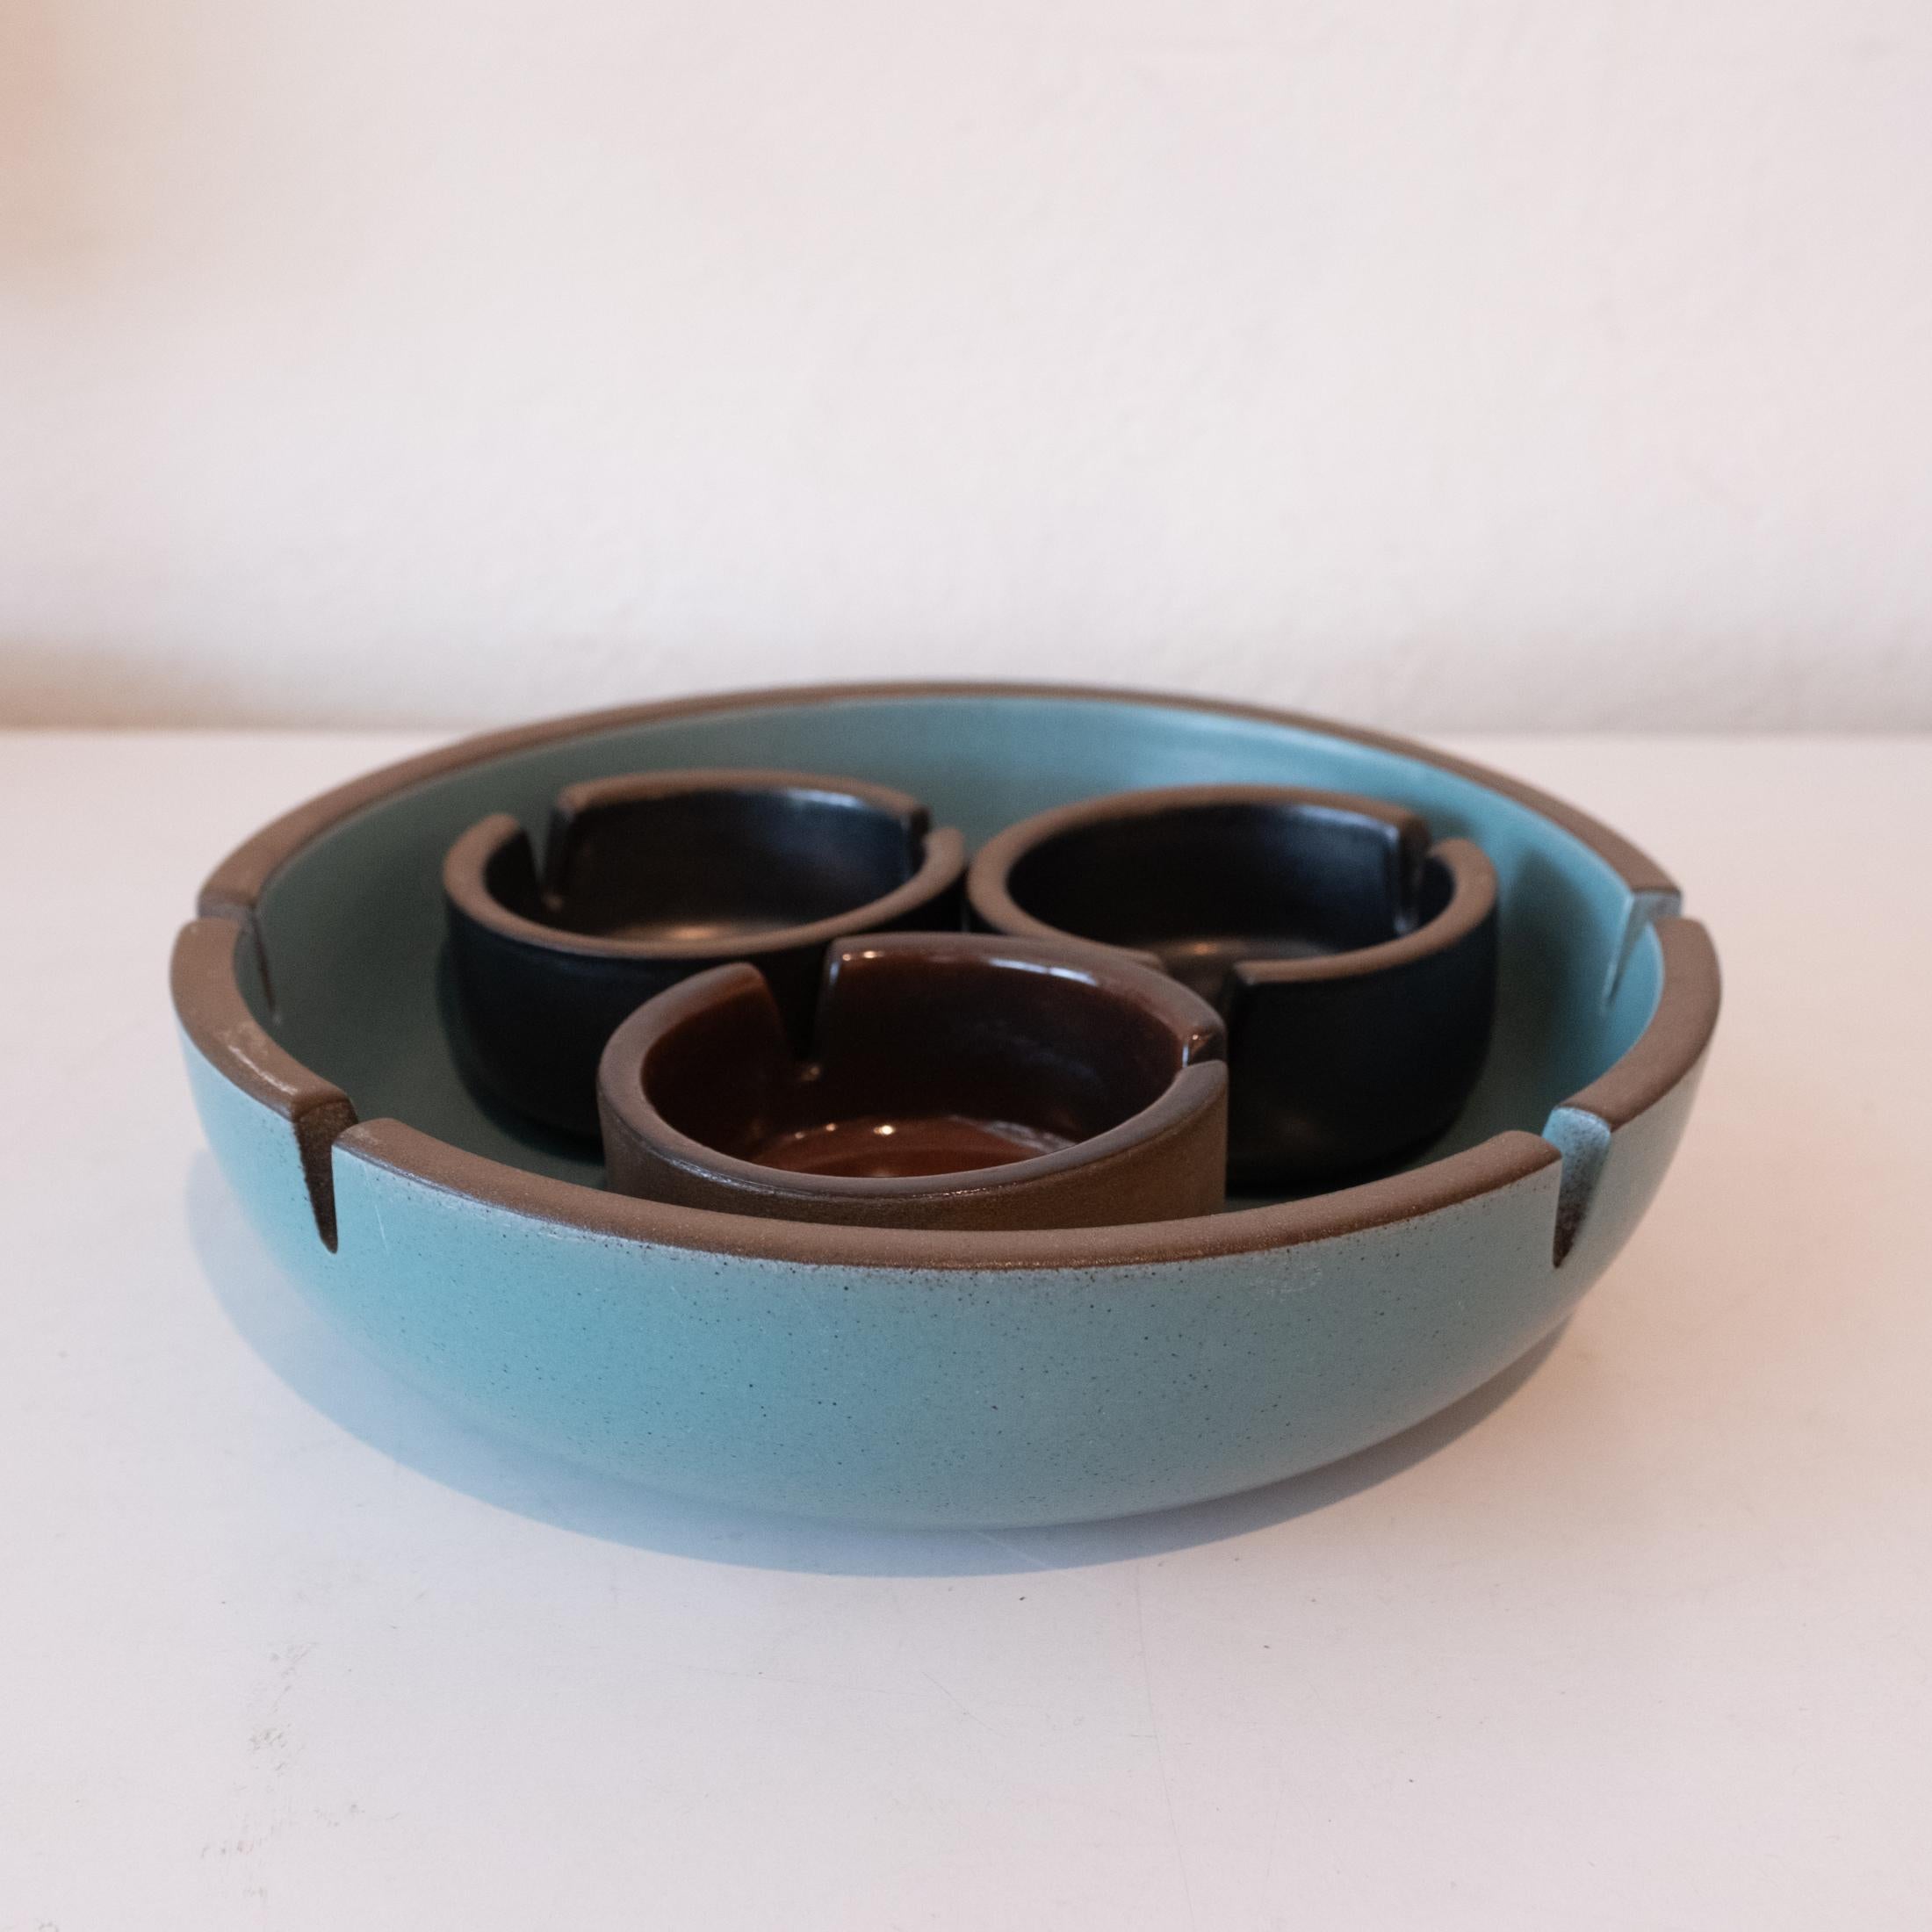 Ein Satz von vier Aschenbechern, entworfen von Edith Heath für ihre Firma Heath Ceramics. Ein klassisches Design des Avantgarde-Keramikers. Hergestellt in Kalifornien in den 1950er Jahren. 

Groß: 8,5